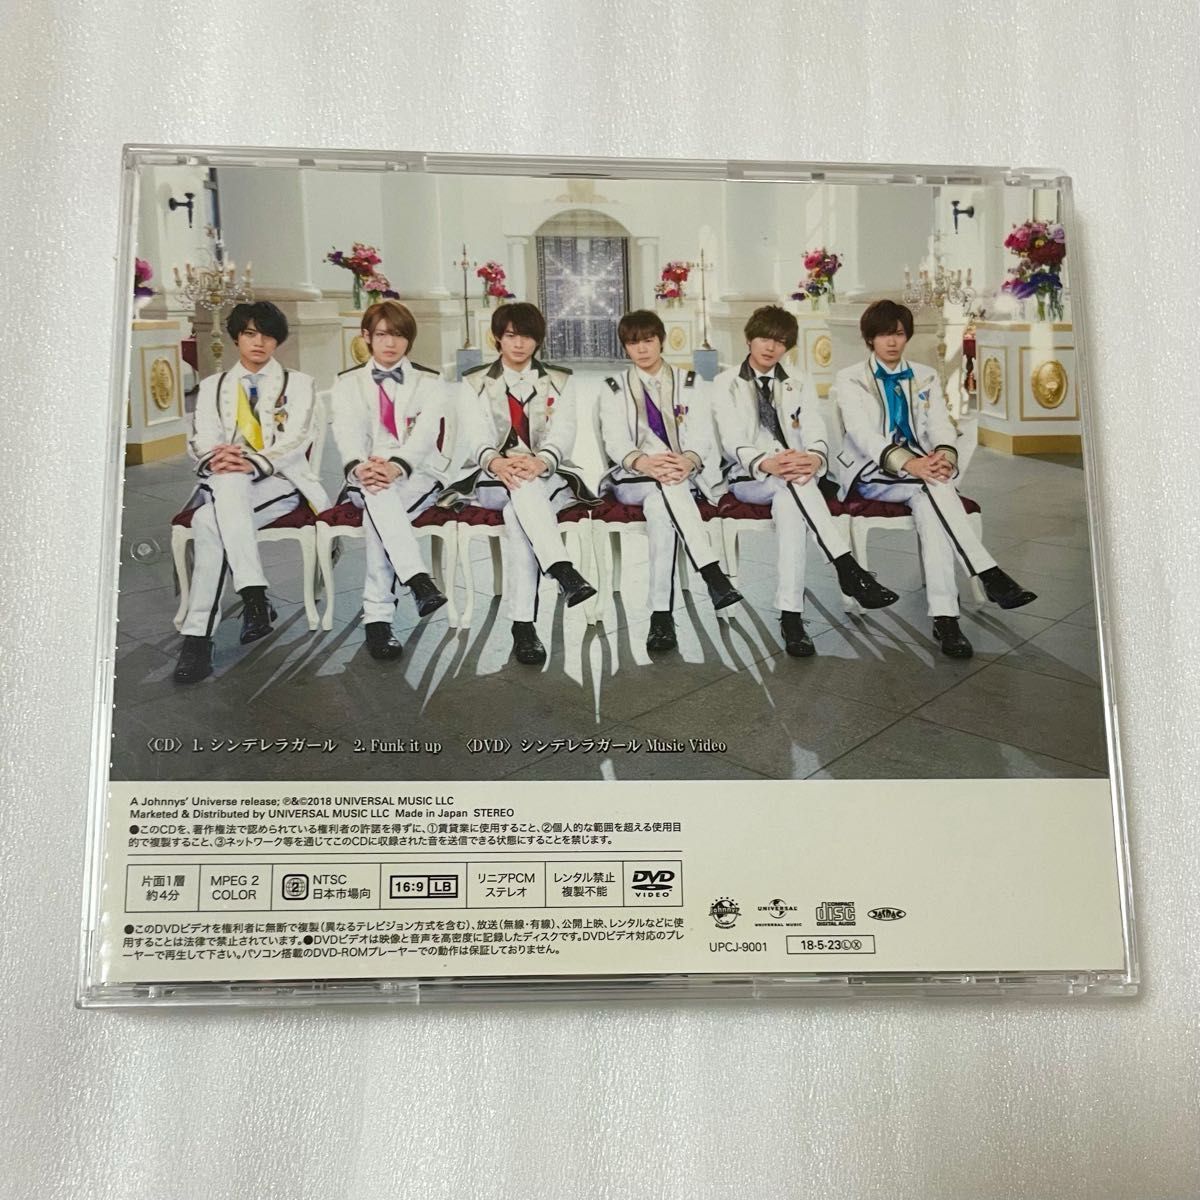 King&Prince シンデレラガール 初回限定盤A CD+DVD